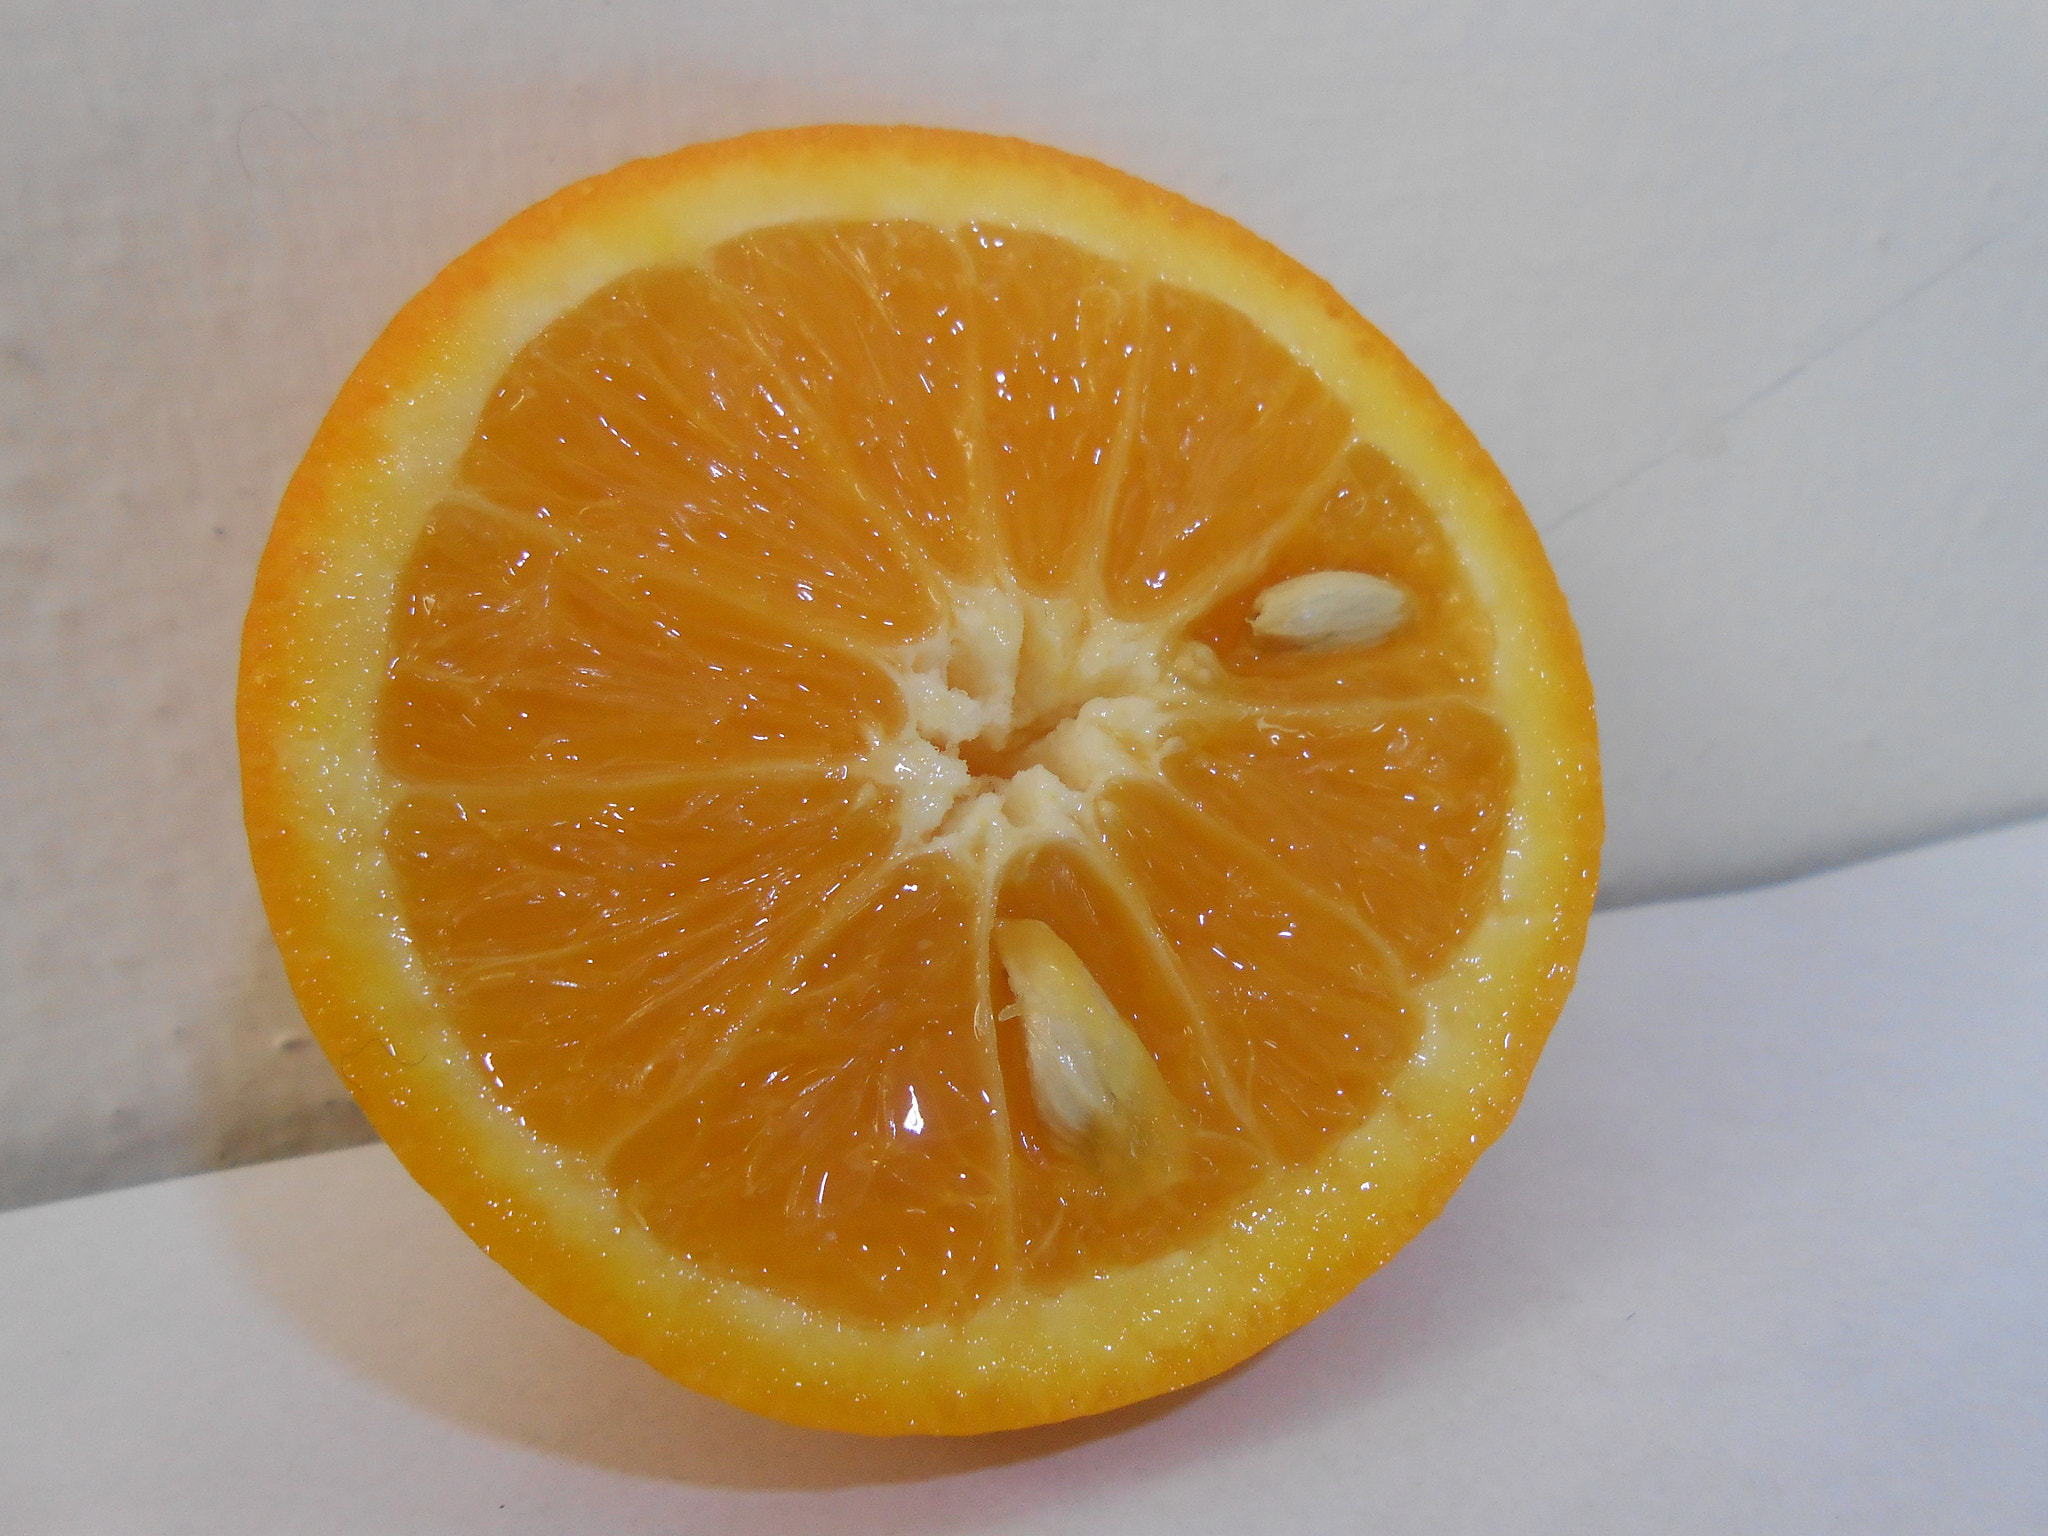 Nikon Coolpix S4300 sample photo. Naranja citrica photography